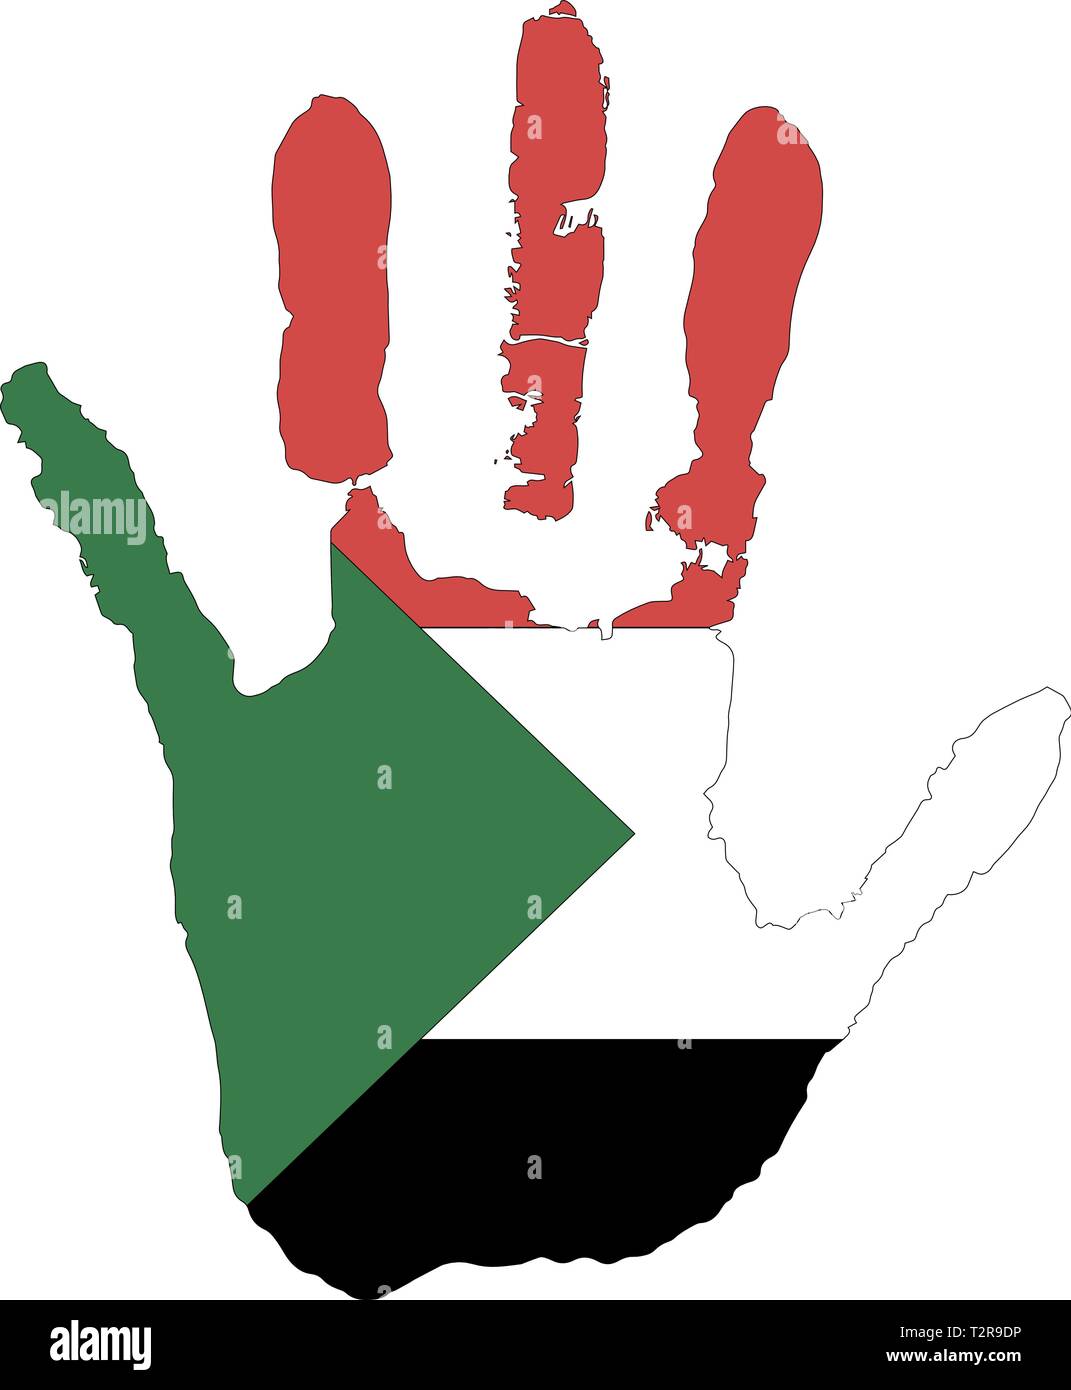 Rot Weiss Schwarz Grun Die Farbe Der Flagge Vektor Handabdruck In Form Von Der Flagge Des Sudan Stock Vektorgrafik Alamy